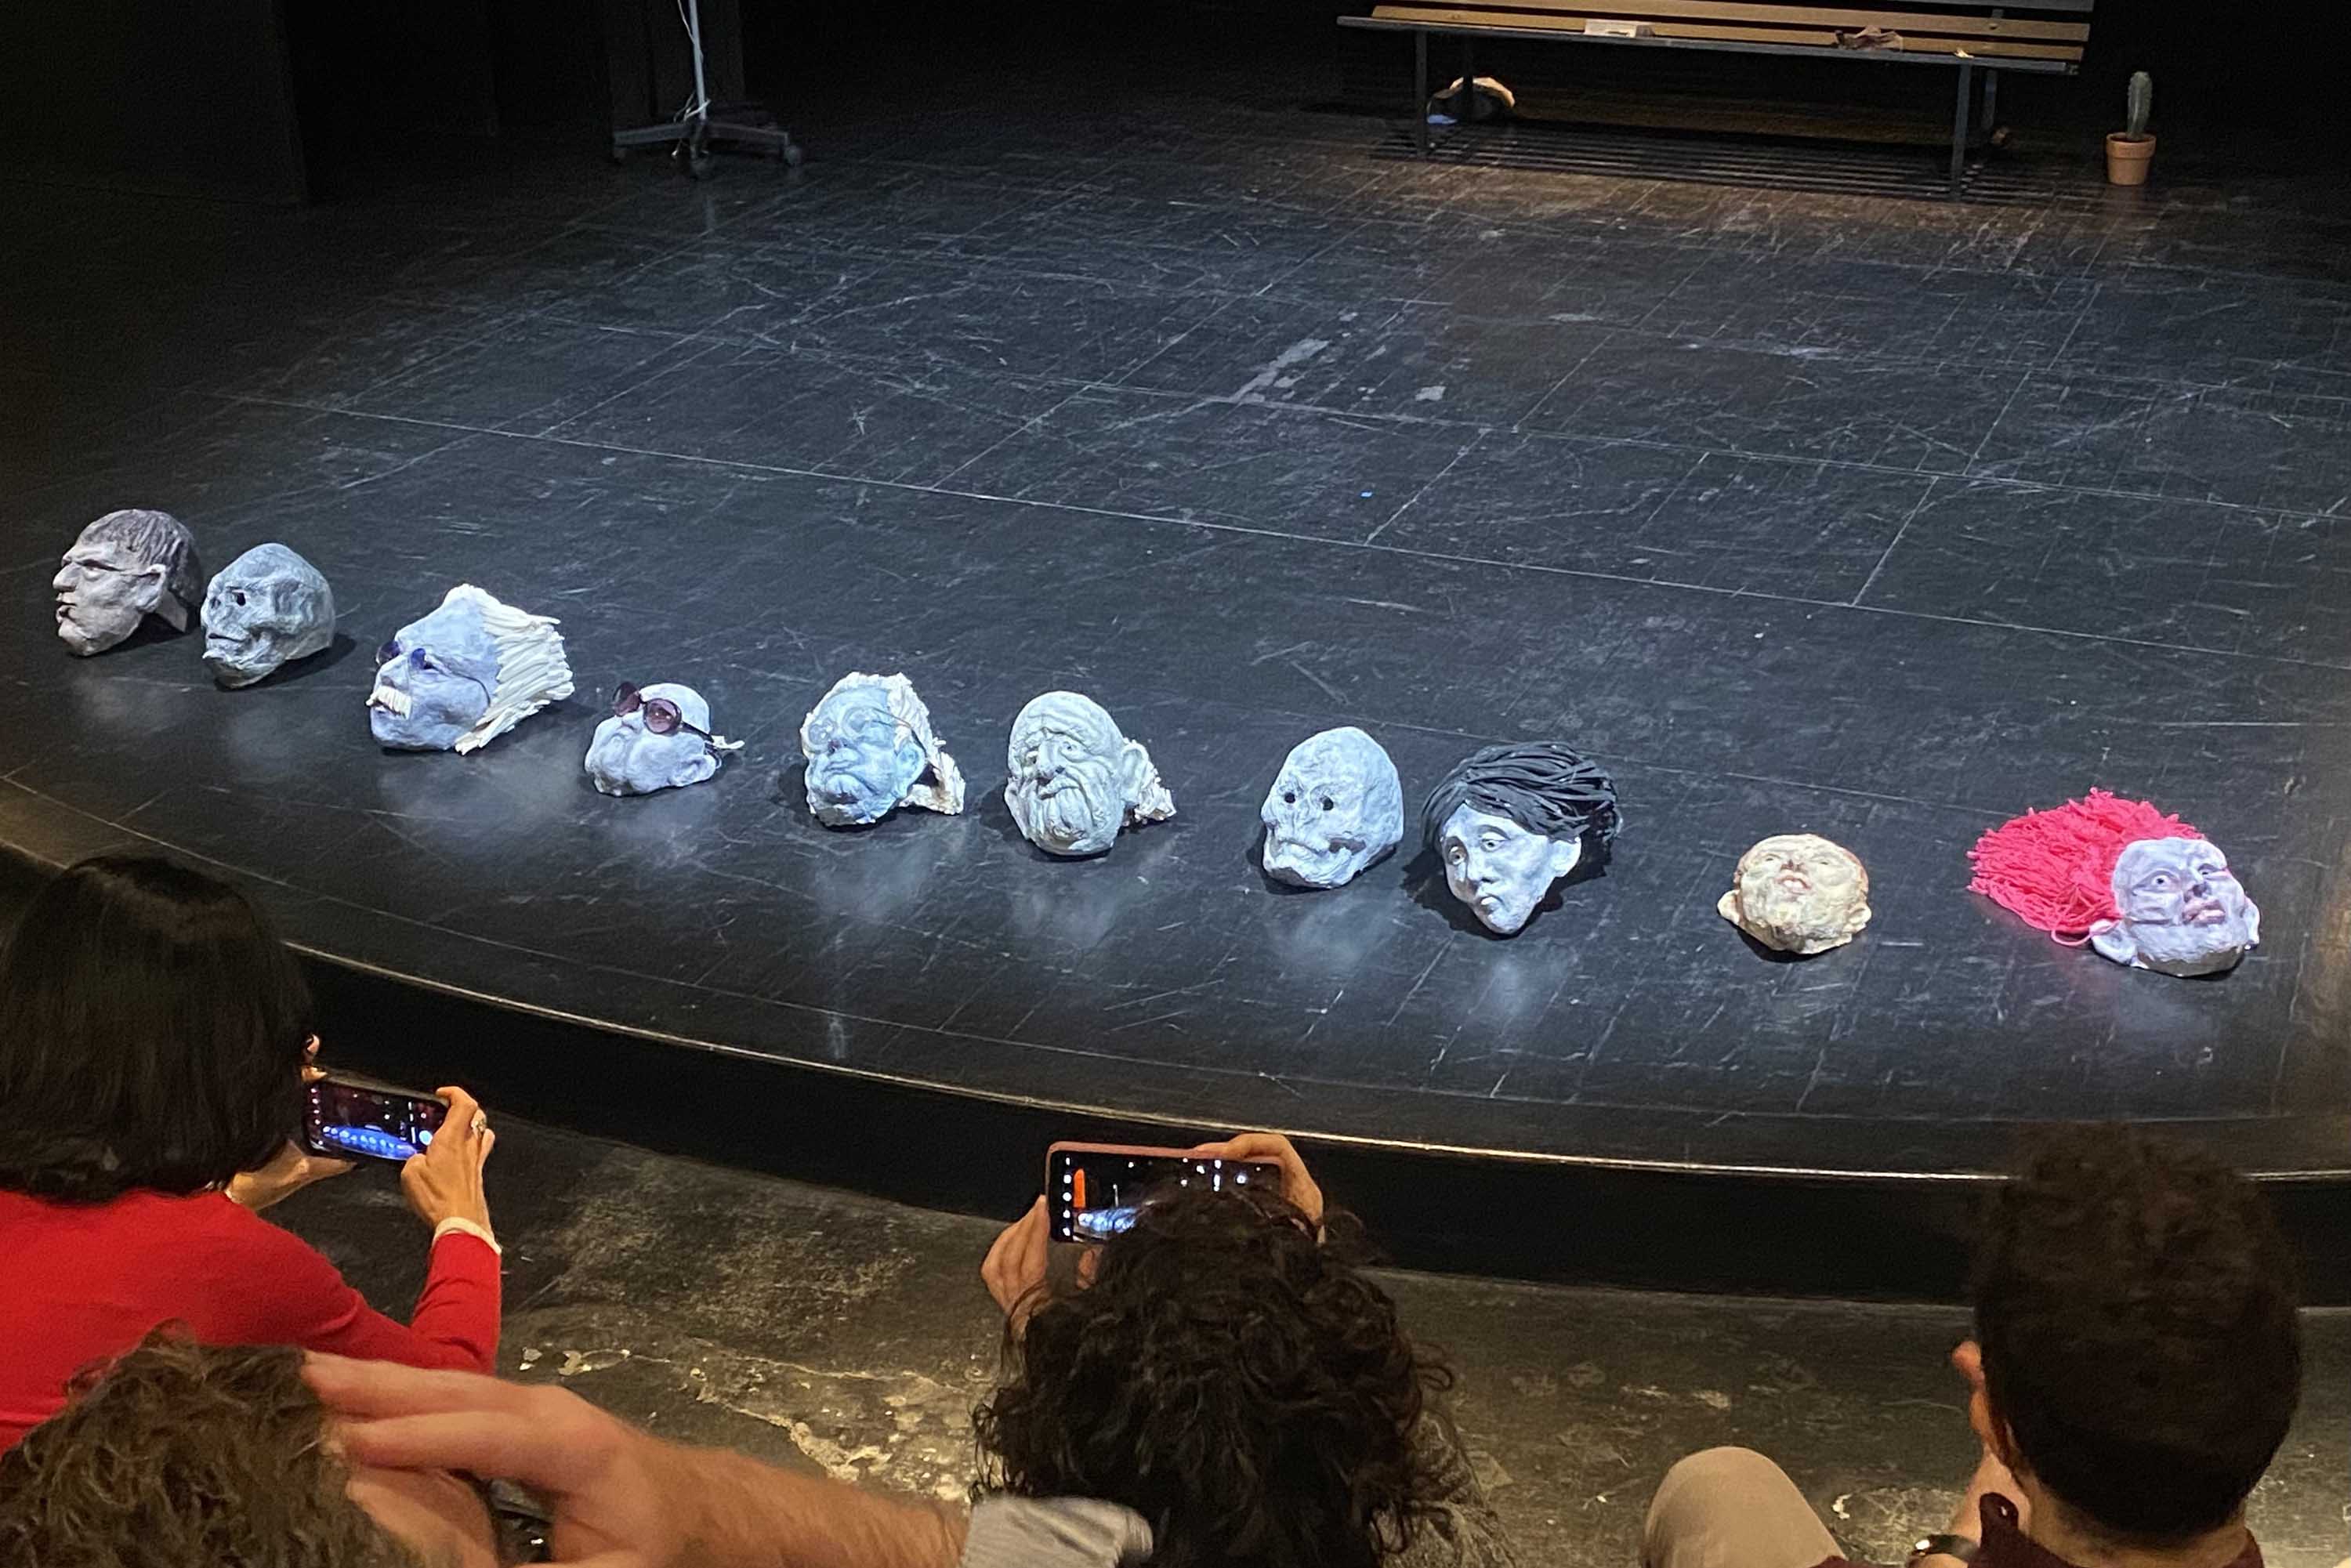 Le maschere posizionate sul palco a fine spettacolo per consentire al pubblico di ammirarle e toccarle (foto di Thea Faro)